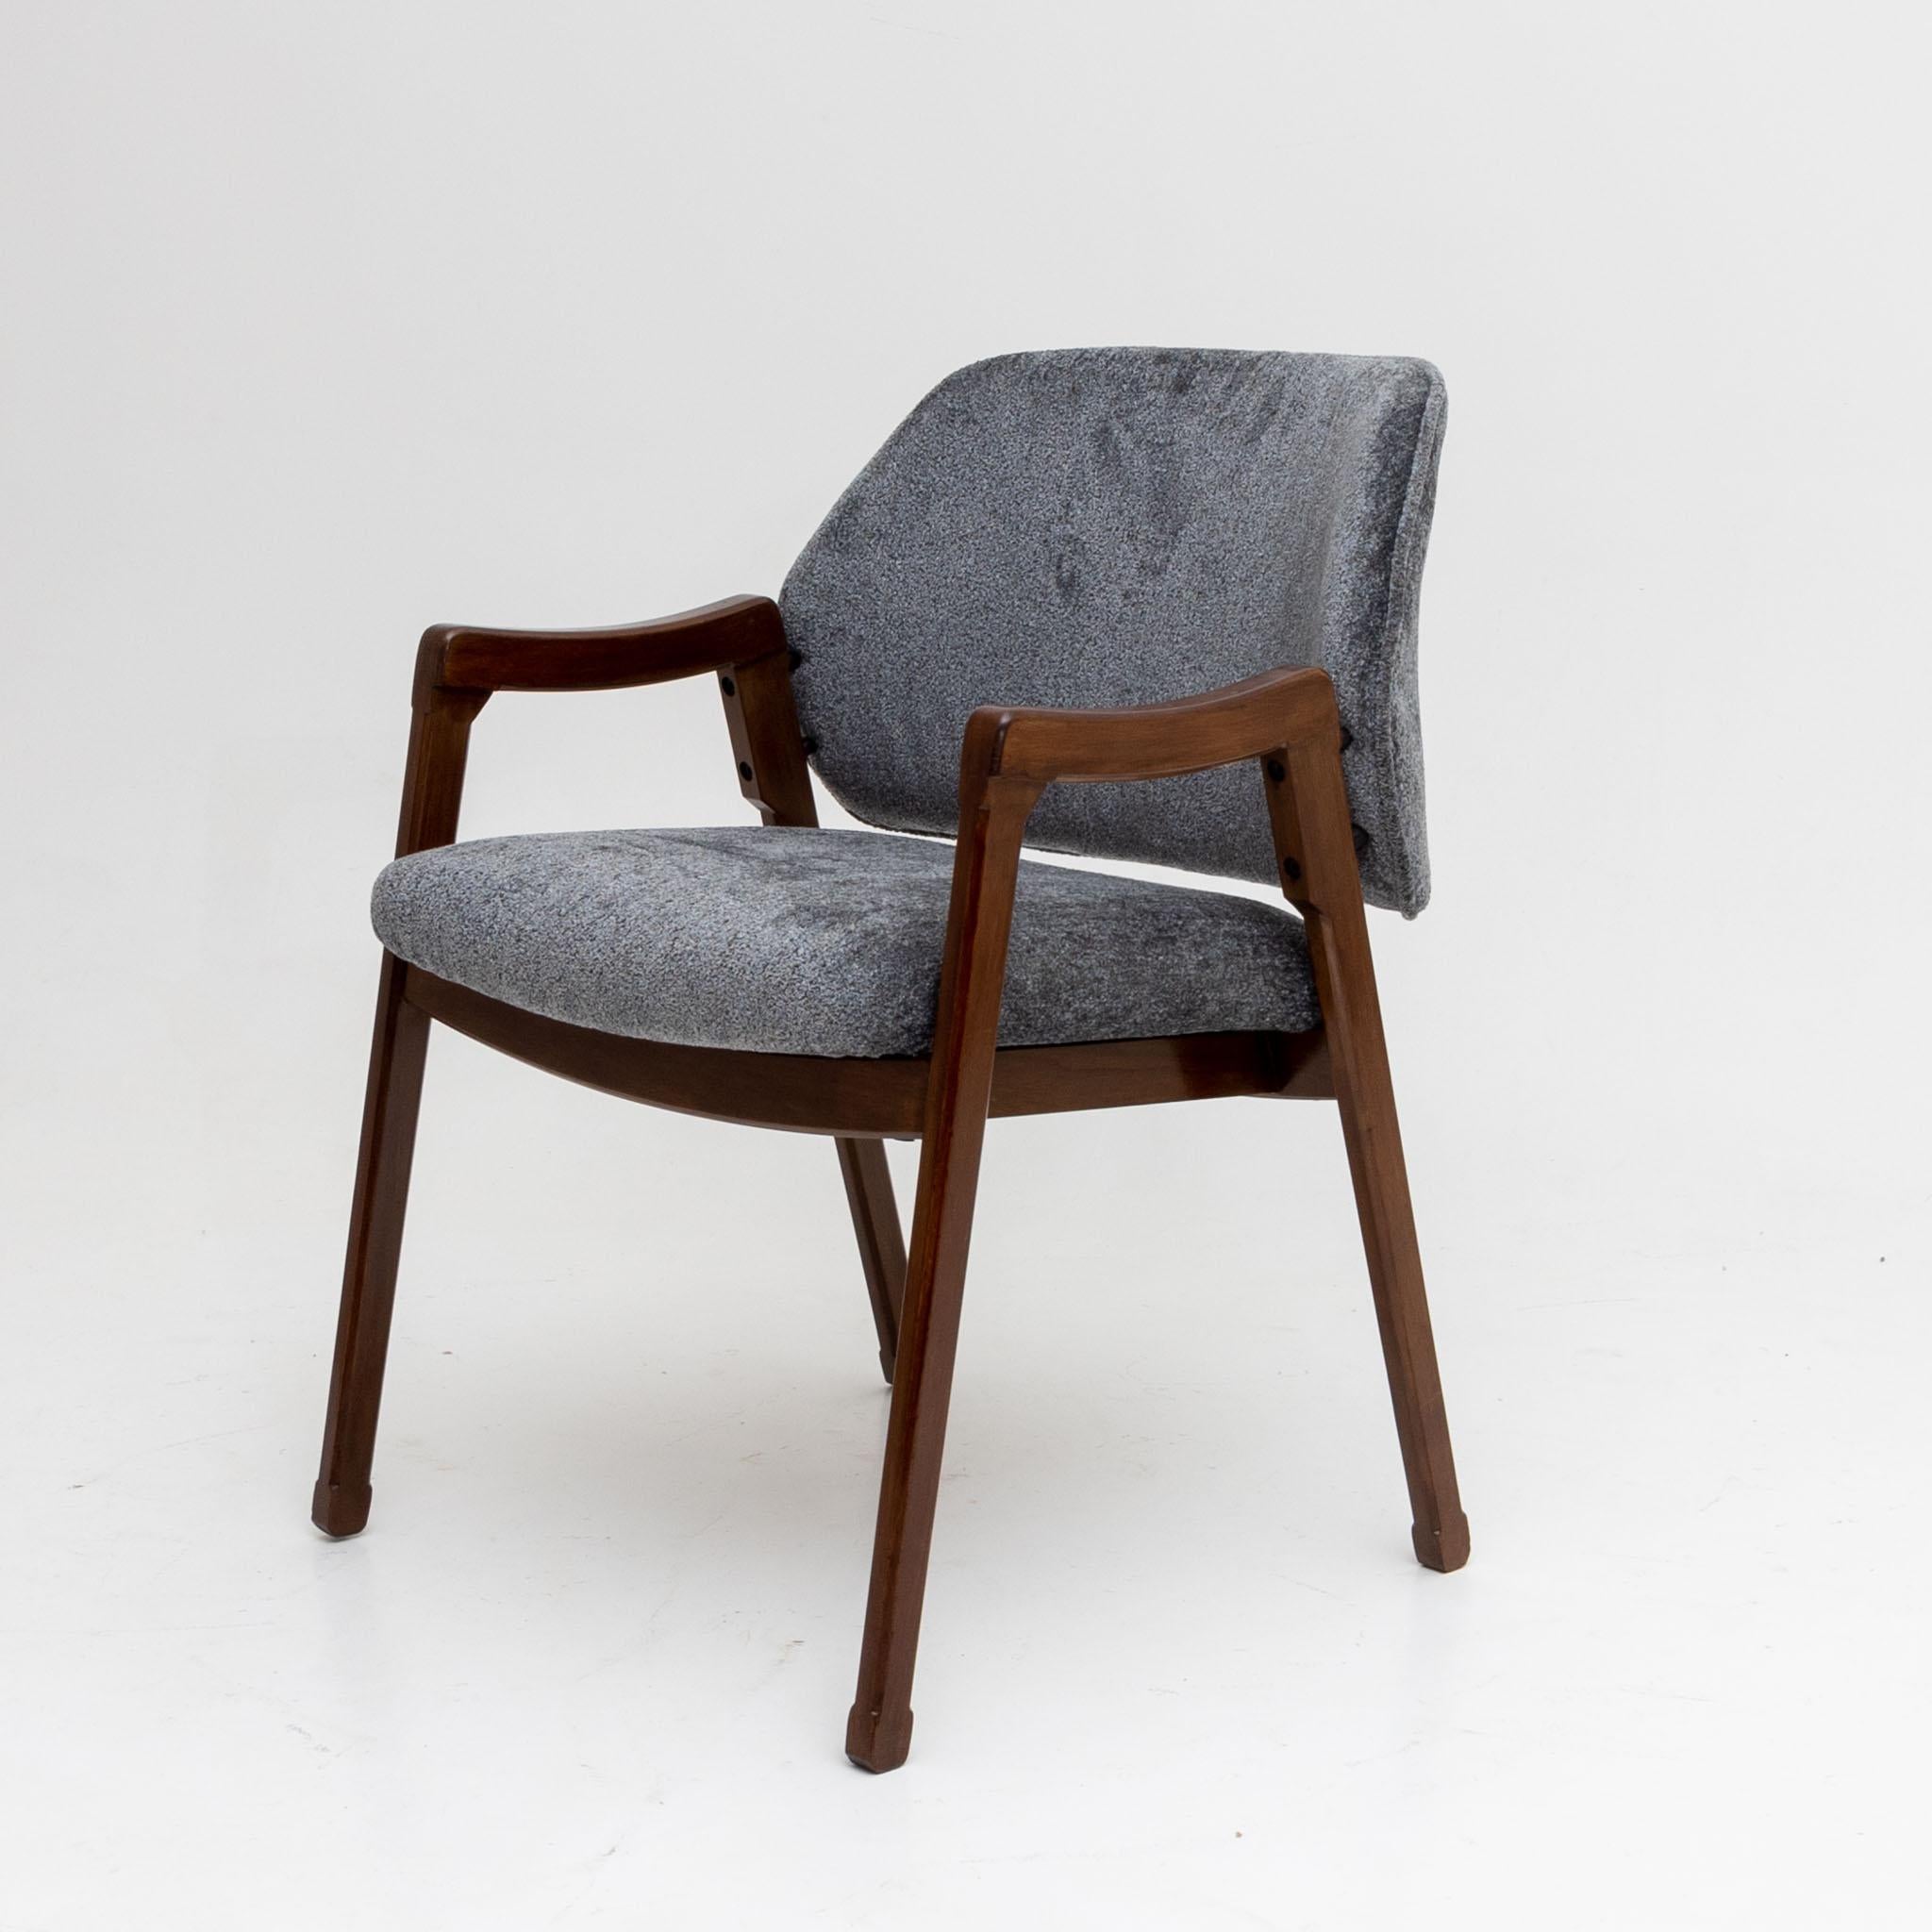 Satz von vier modernistischen Sesseln von Ico Parisi.
Modell #814. Rahmen aus italienischem Nussbaum.